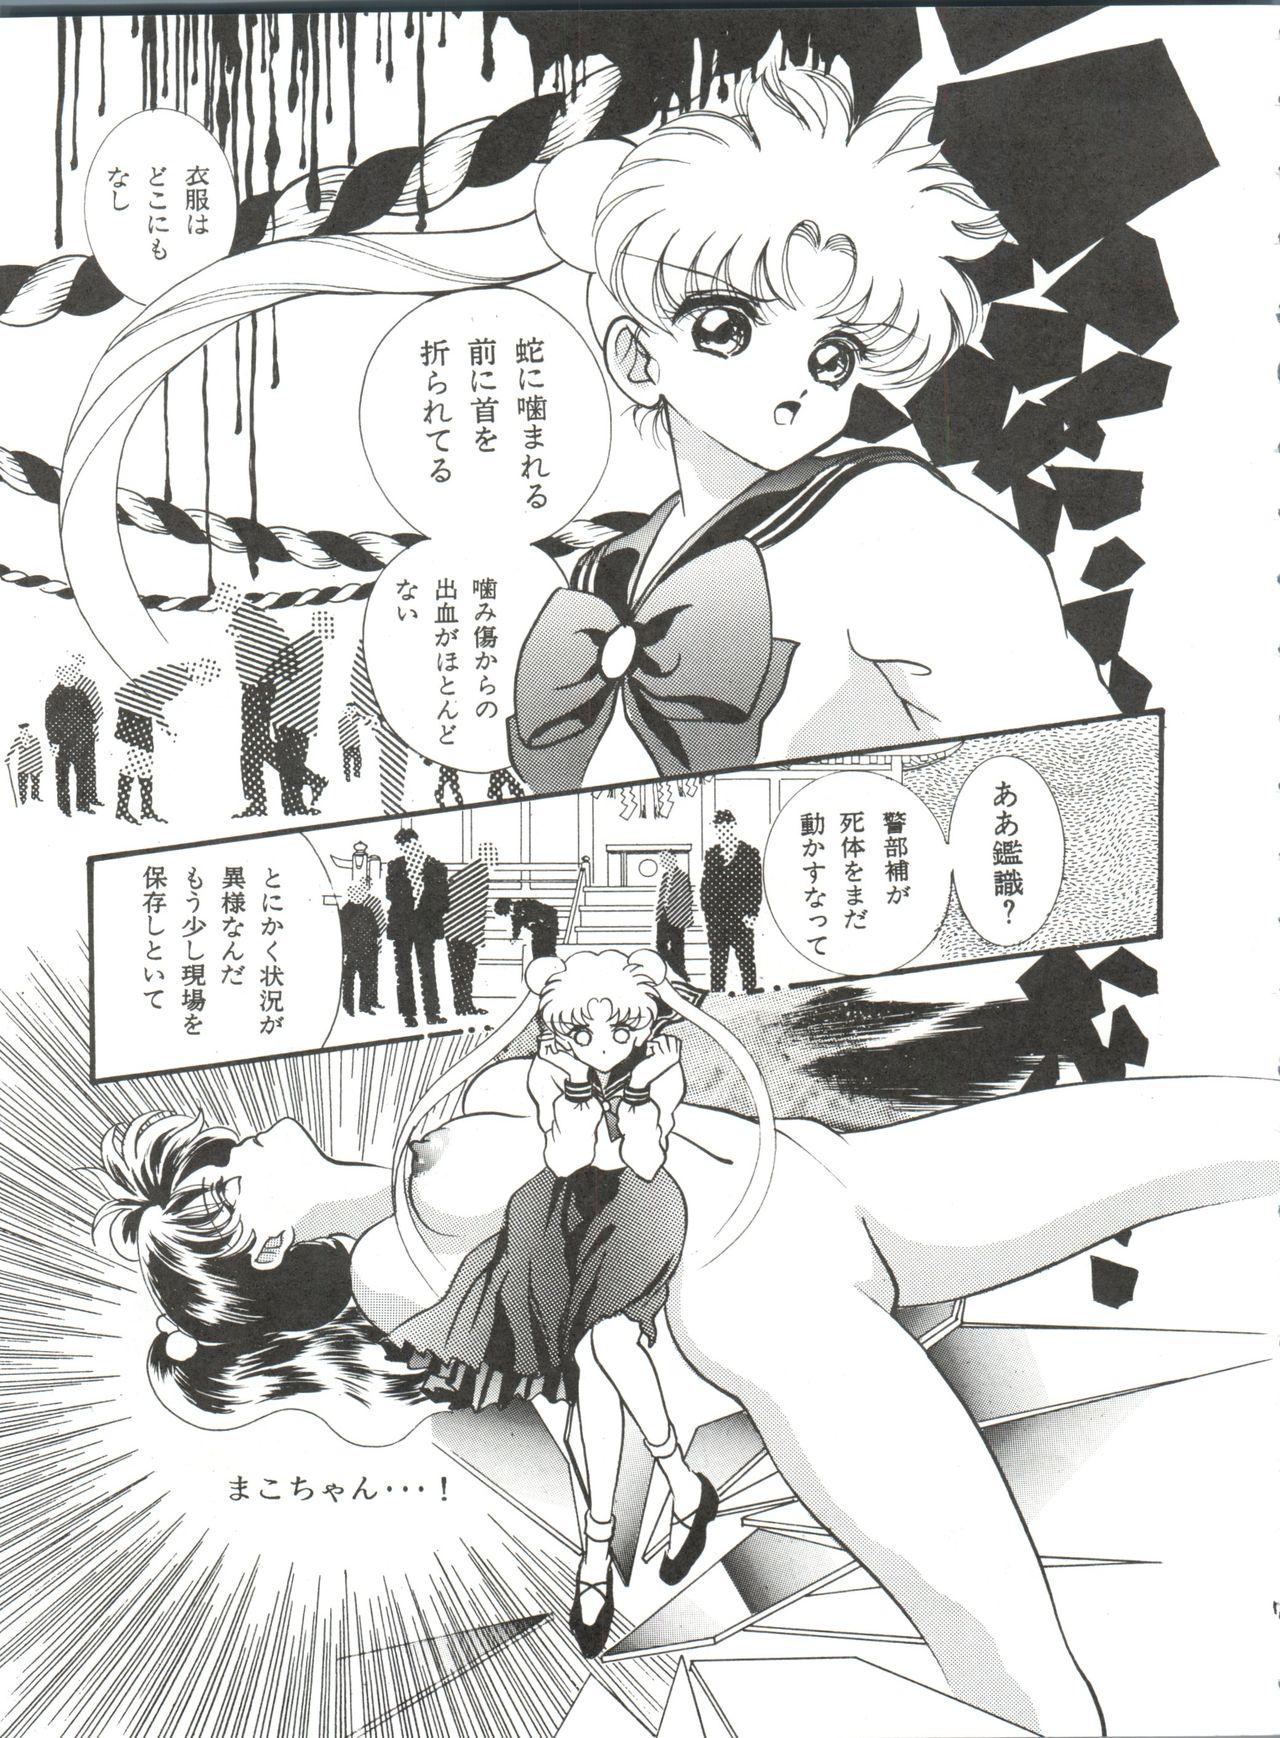 Jeans Aoi no Mercury - Sailor moon Dick Suck - Page 8